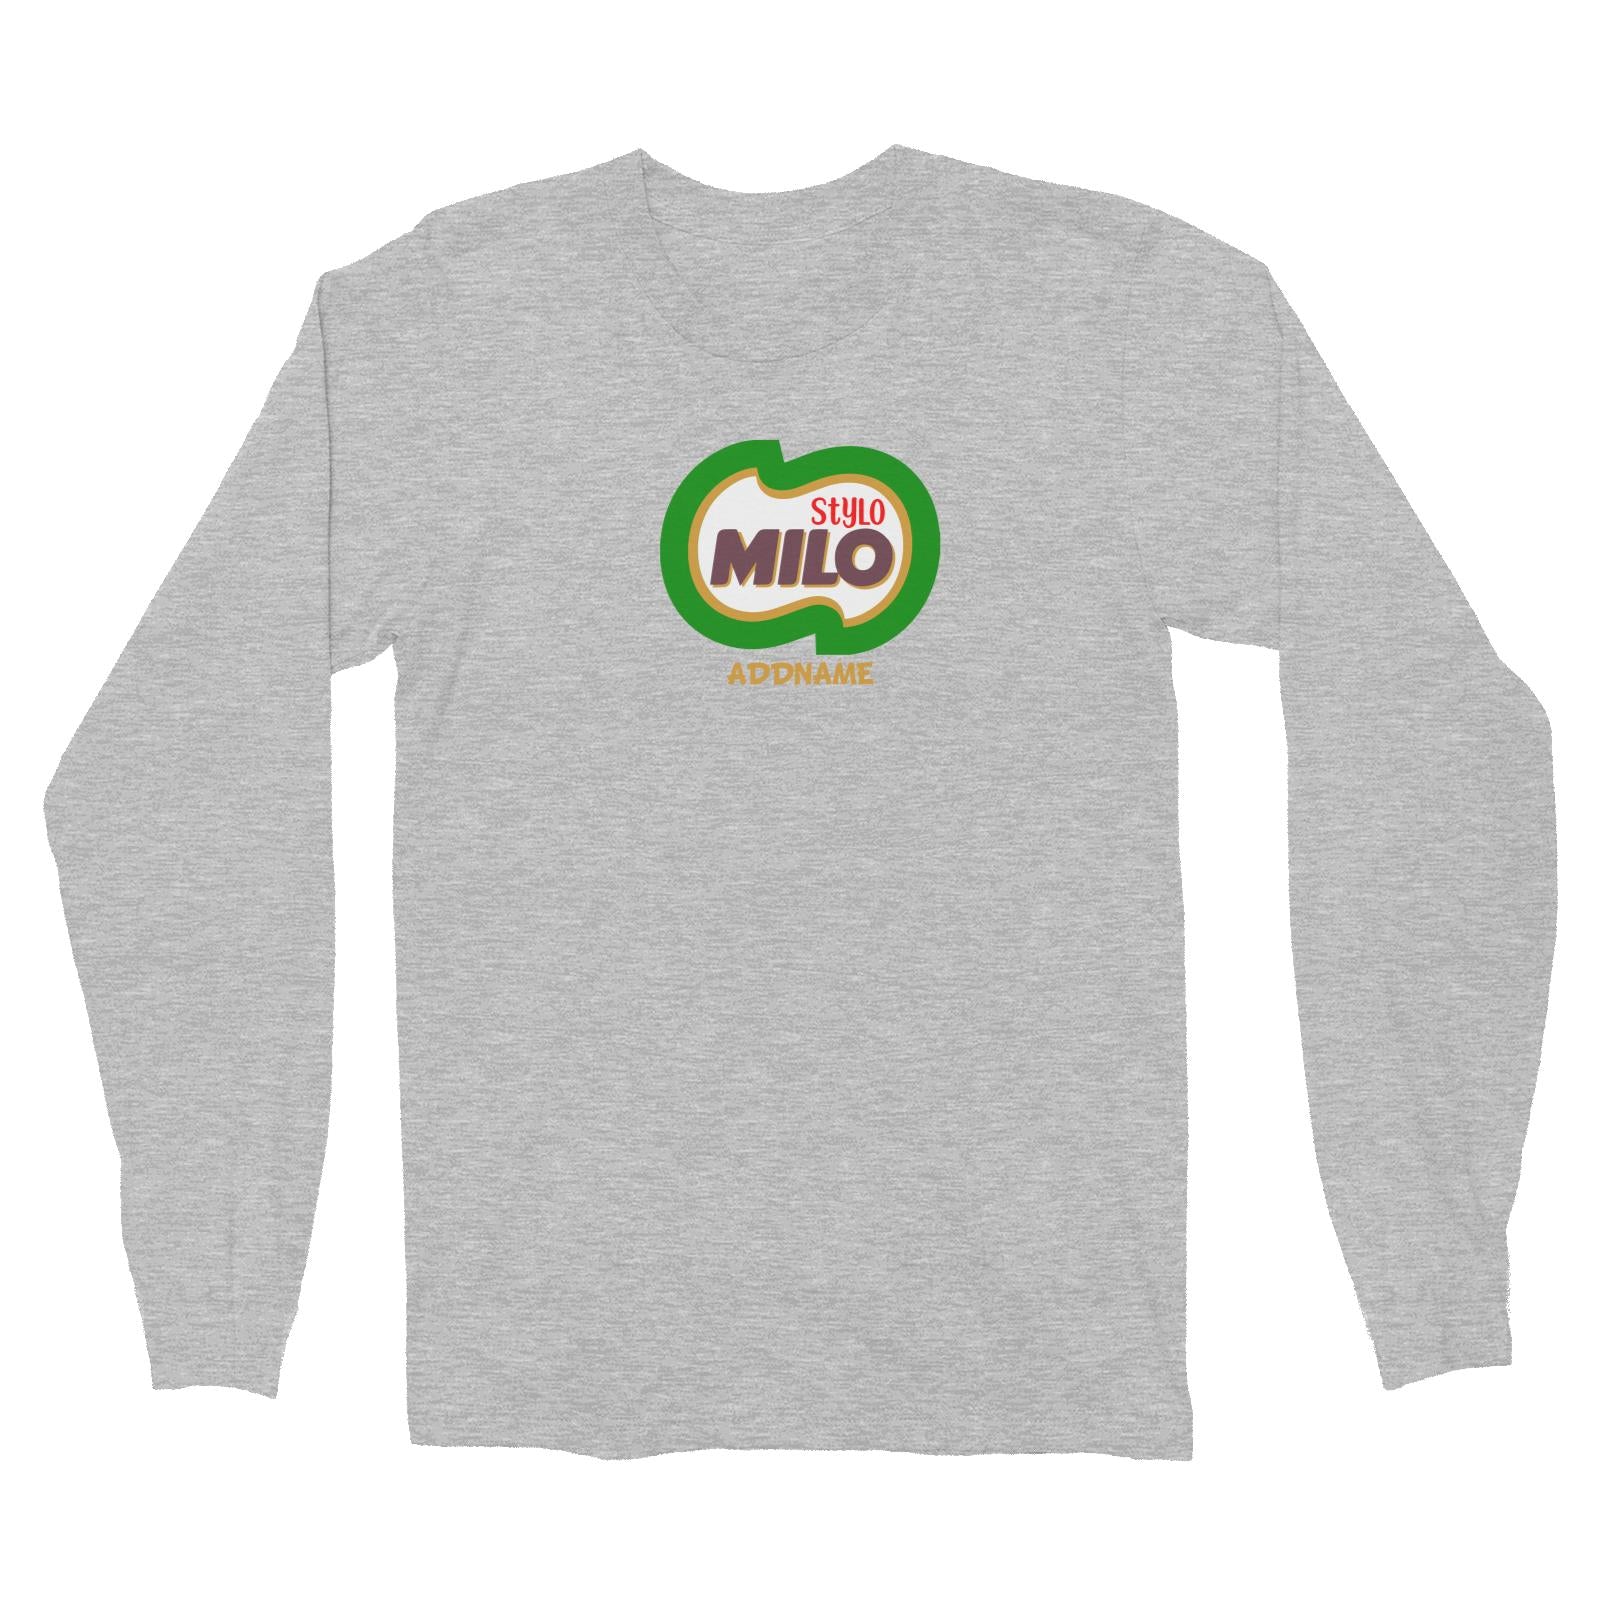 Stylo Milo Long Sleeve Unisex T-Shirt